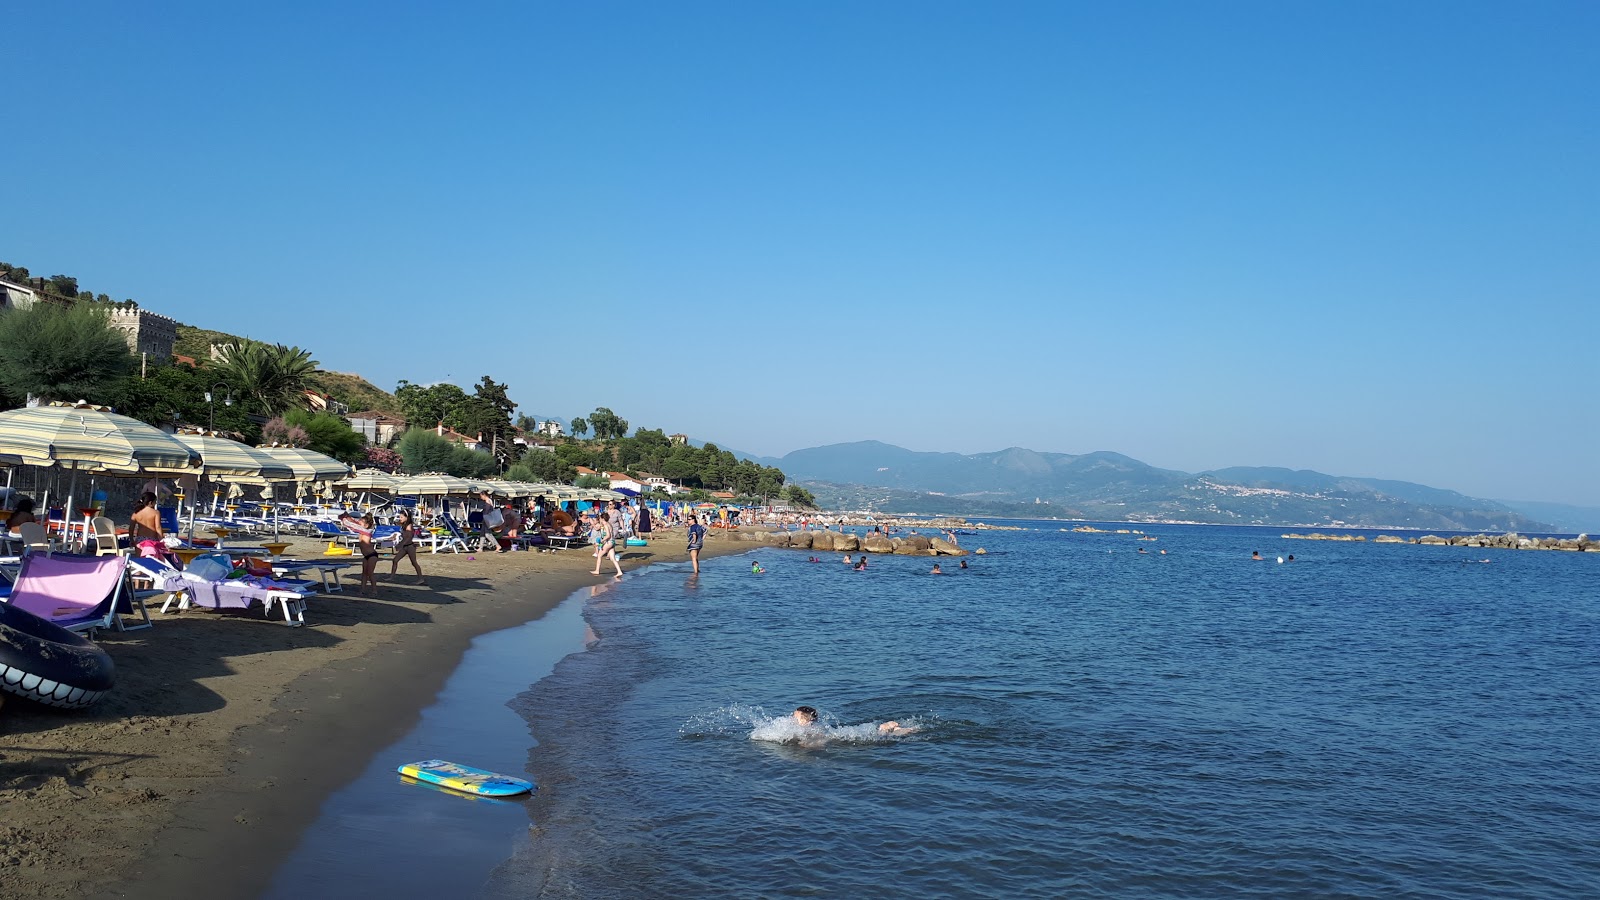 Photo of Pioppi beach beach resort area